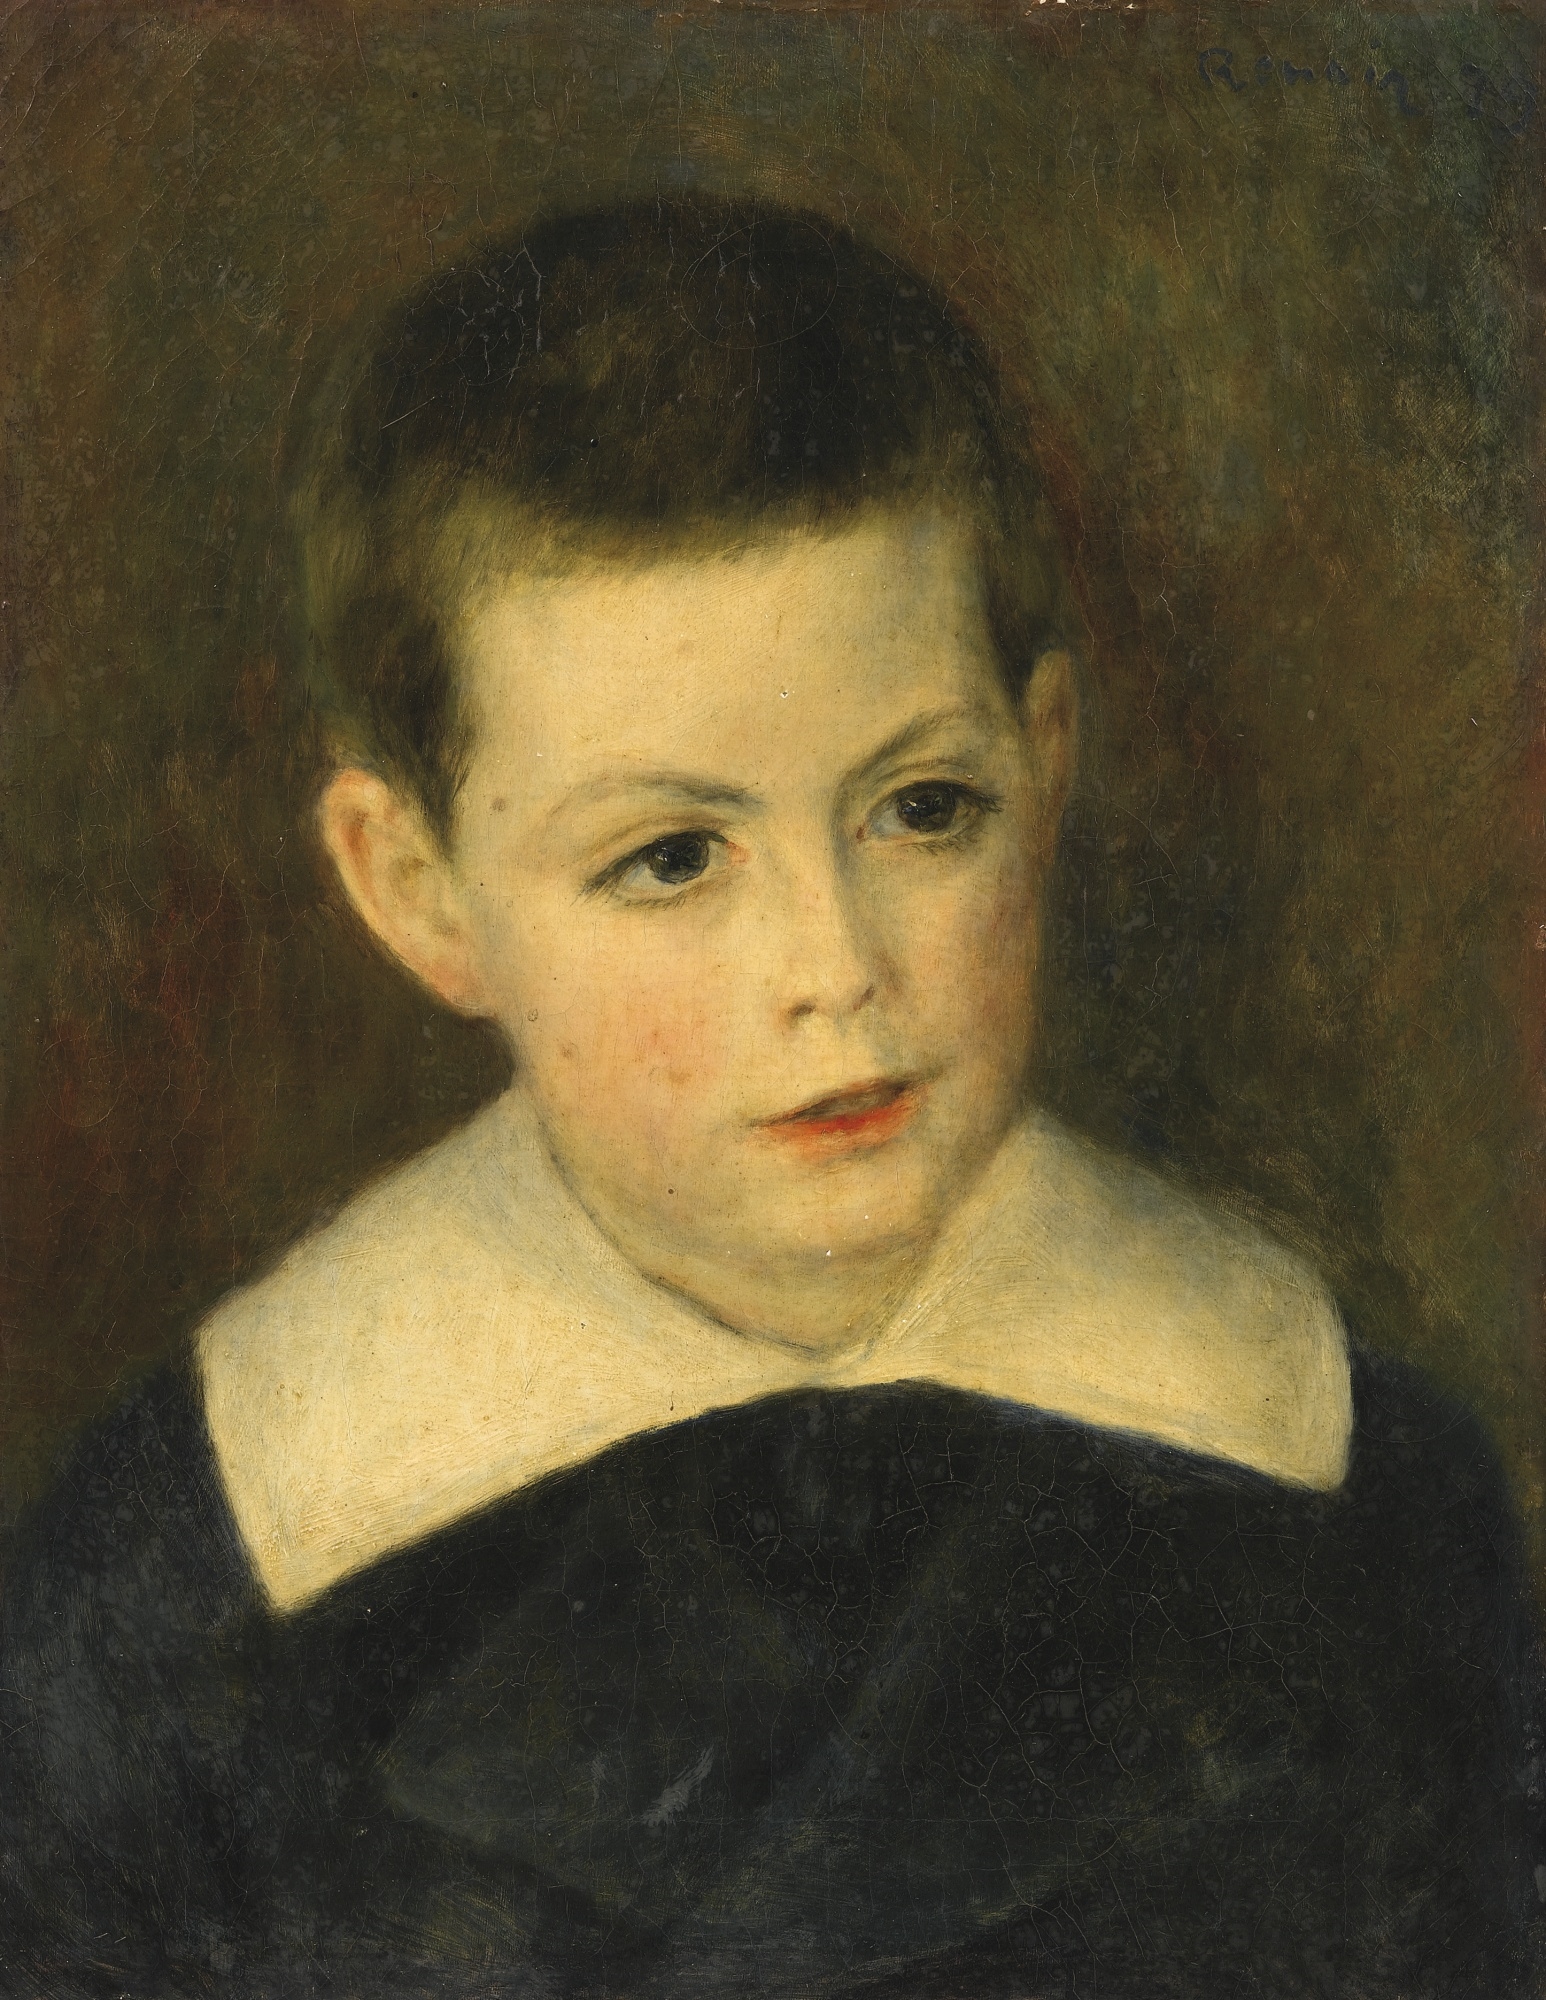 PORTRAIT D'ANDRÉ BÉRARD ENFANT by Pierre-Auguste Renoir, 1879